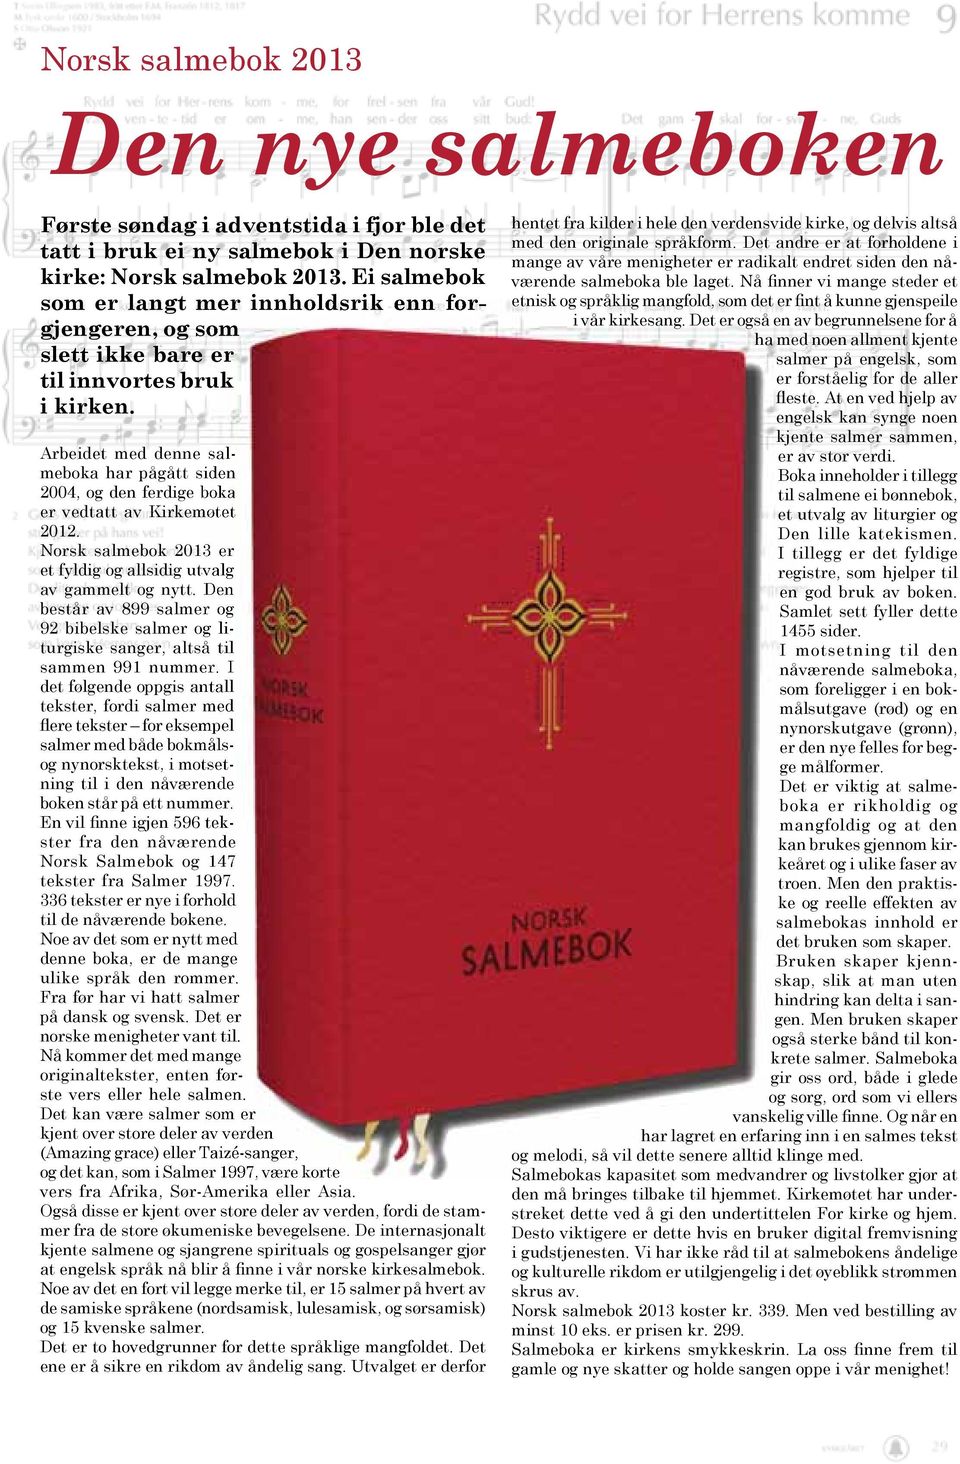 Arbeidet med denne salmeboka har pågått siden 2004, og den ferdige boka er vedtatt av Kirkemøtet 2012. Norsk salmebok 2013 er et fyldig og allsidig utvalg av gammelt og nytt.